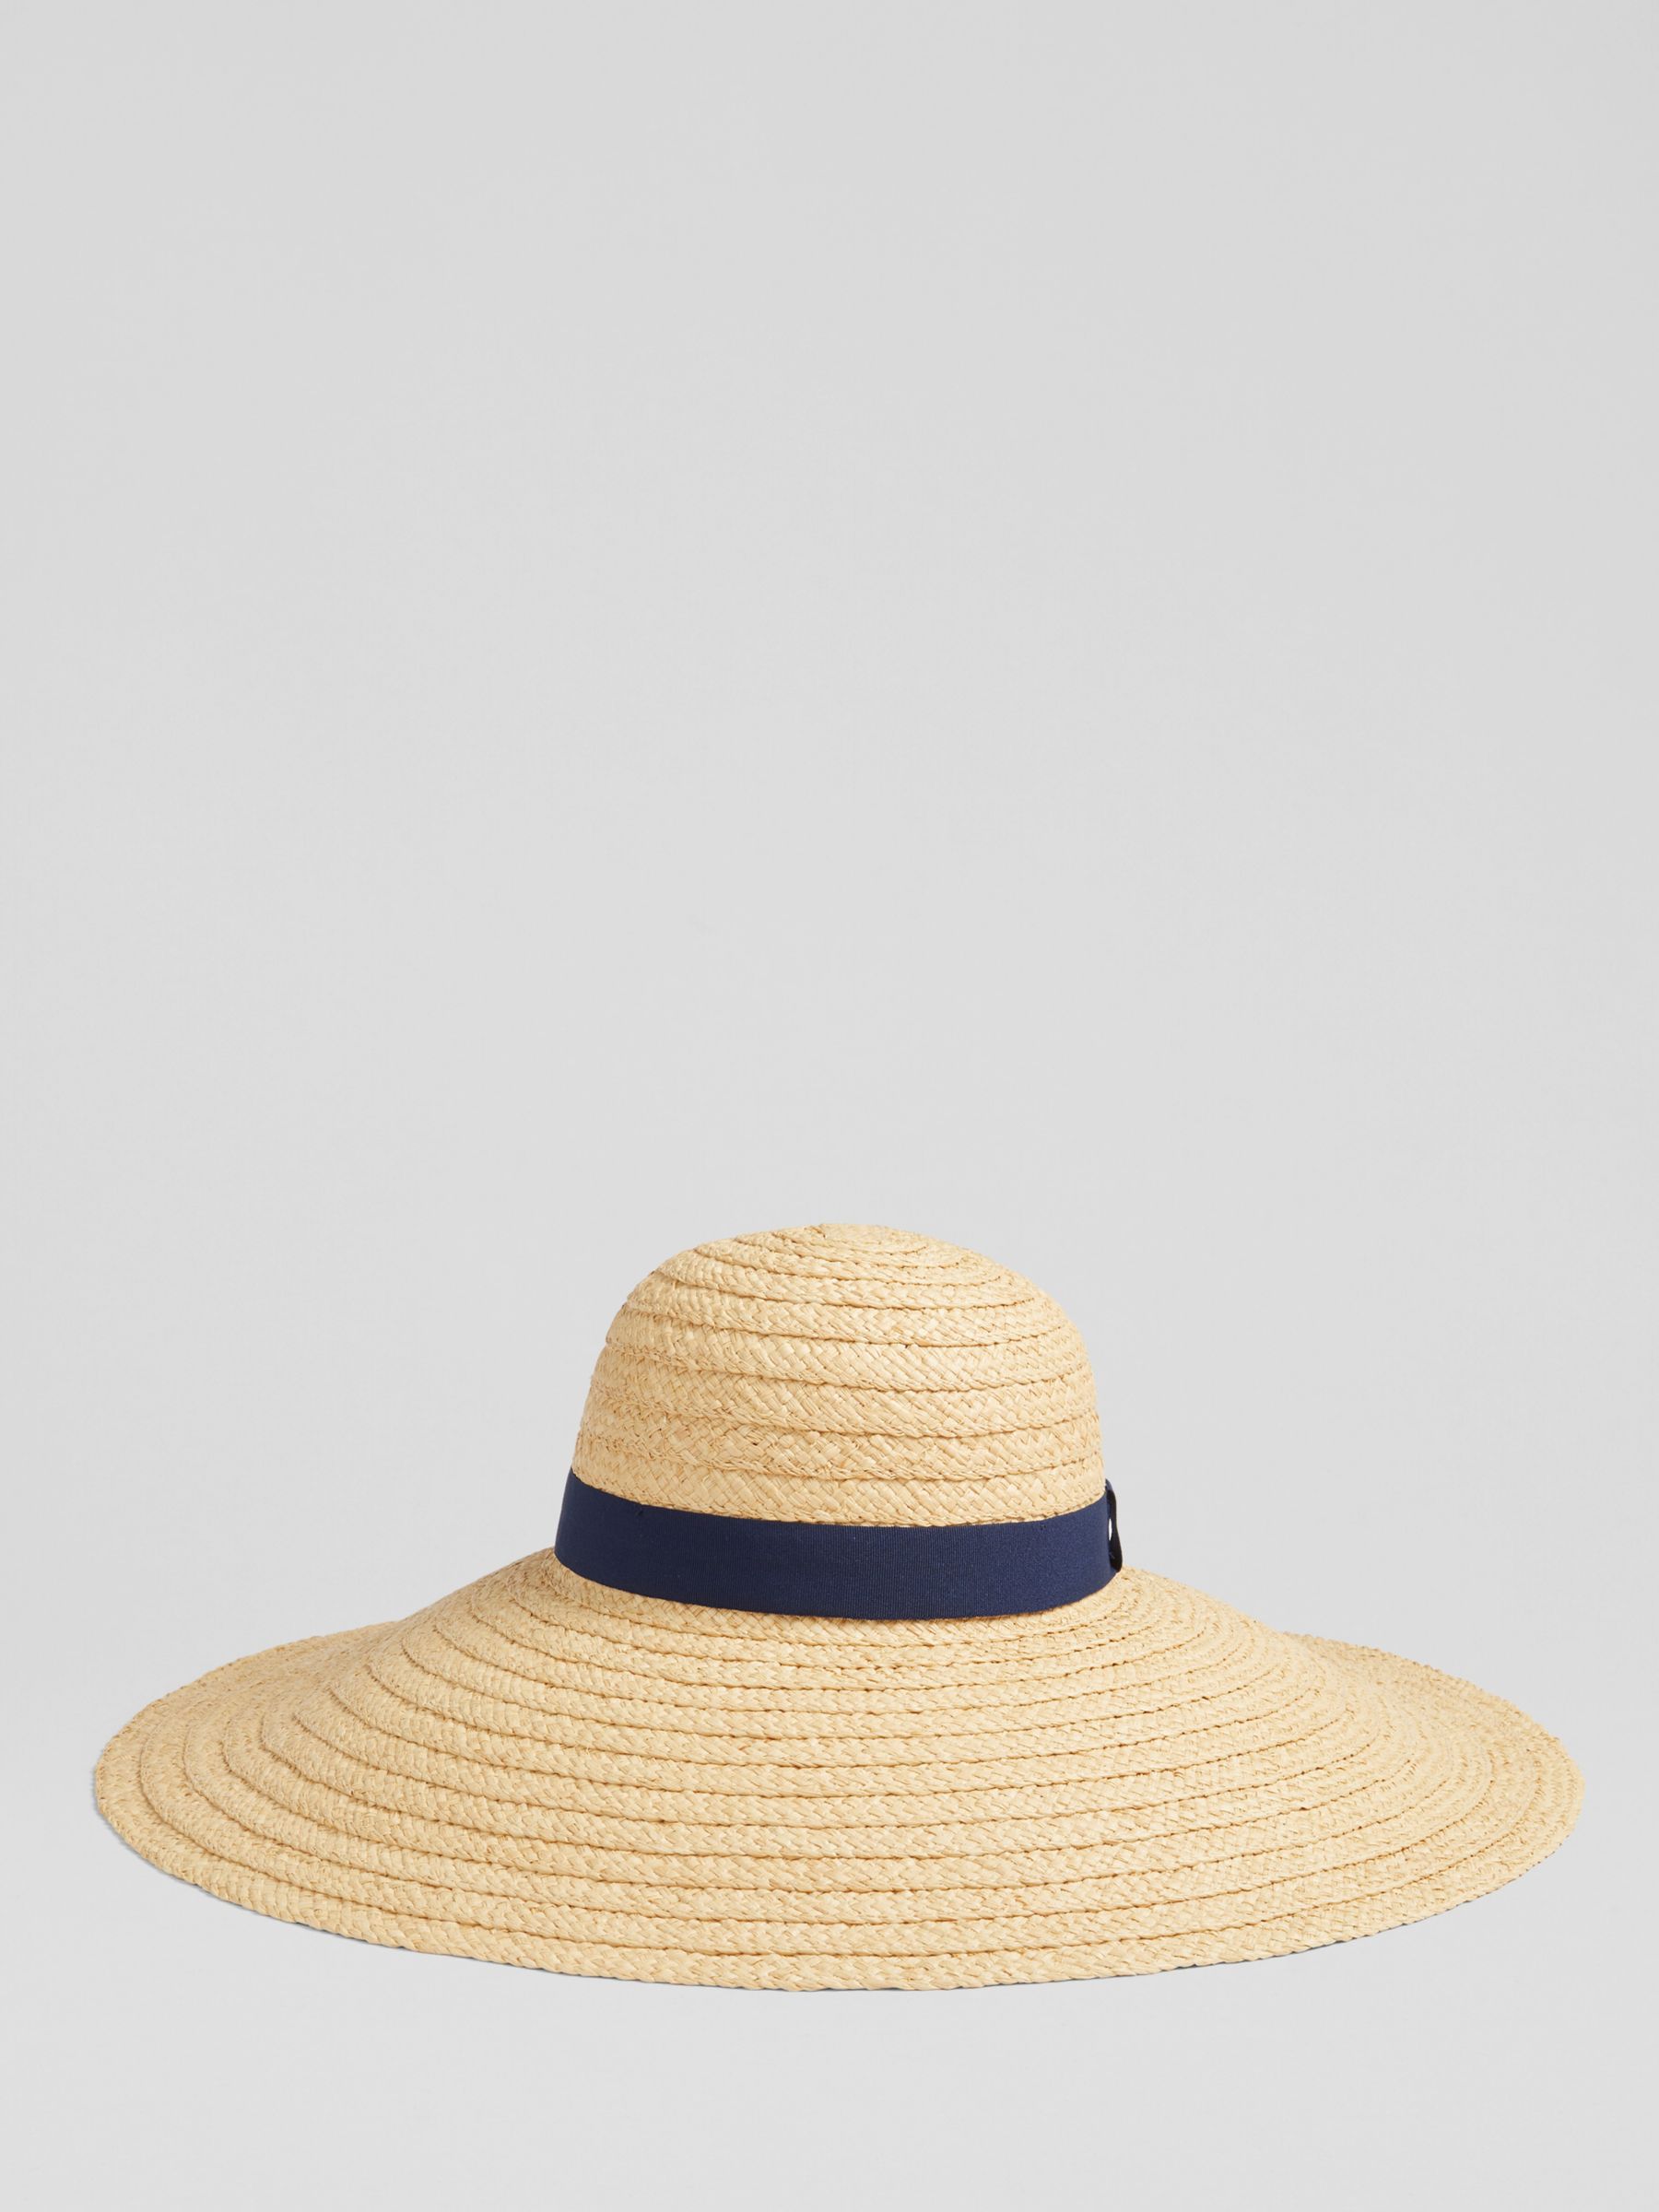 L.K.Bennett Gigi Raffia Wide Brimmed Hat, Natural, One Size